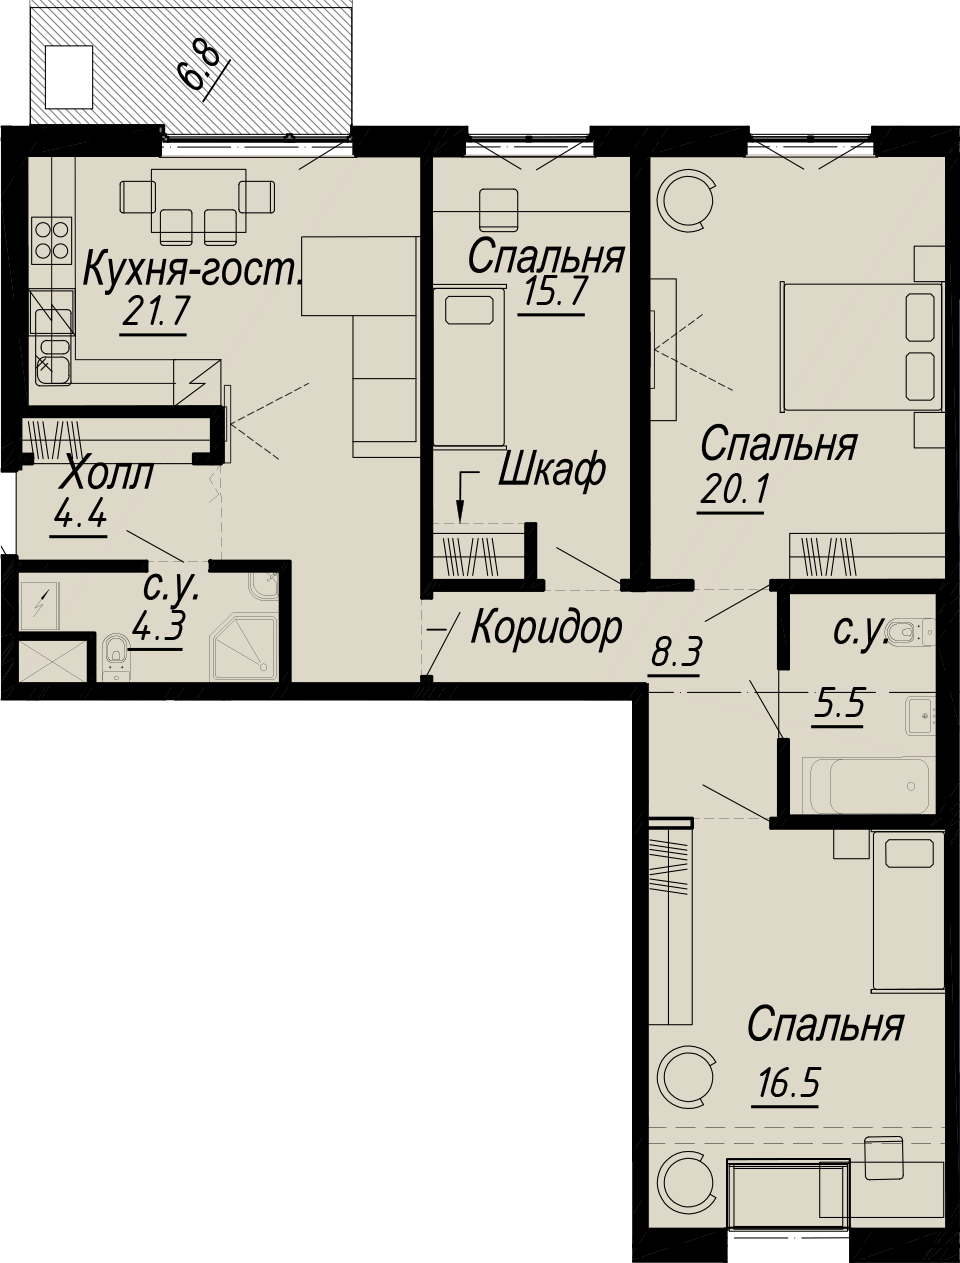 3-комнатная квартира  №4-7 в Meltzer Hall: 99 м², этаж 7 - купить в Санкт-Петербурге